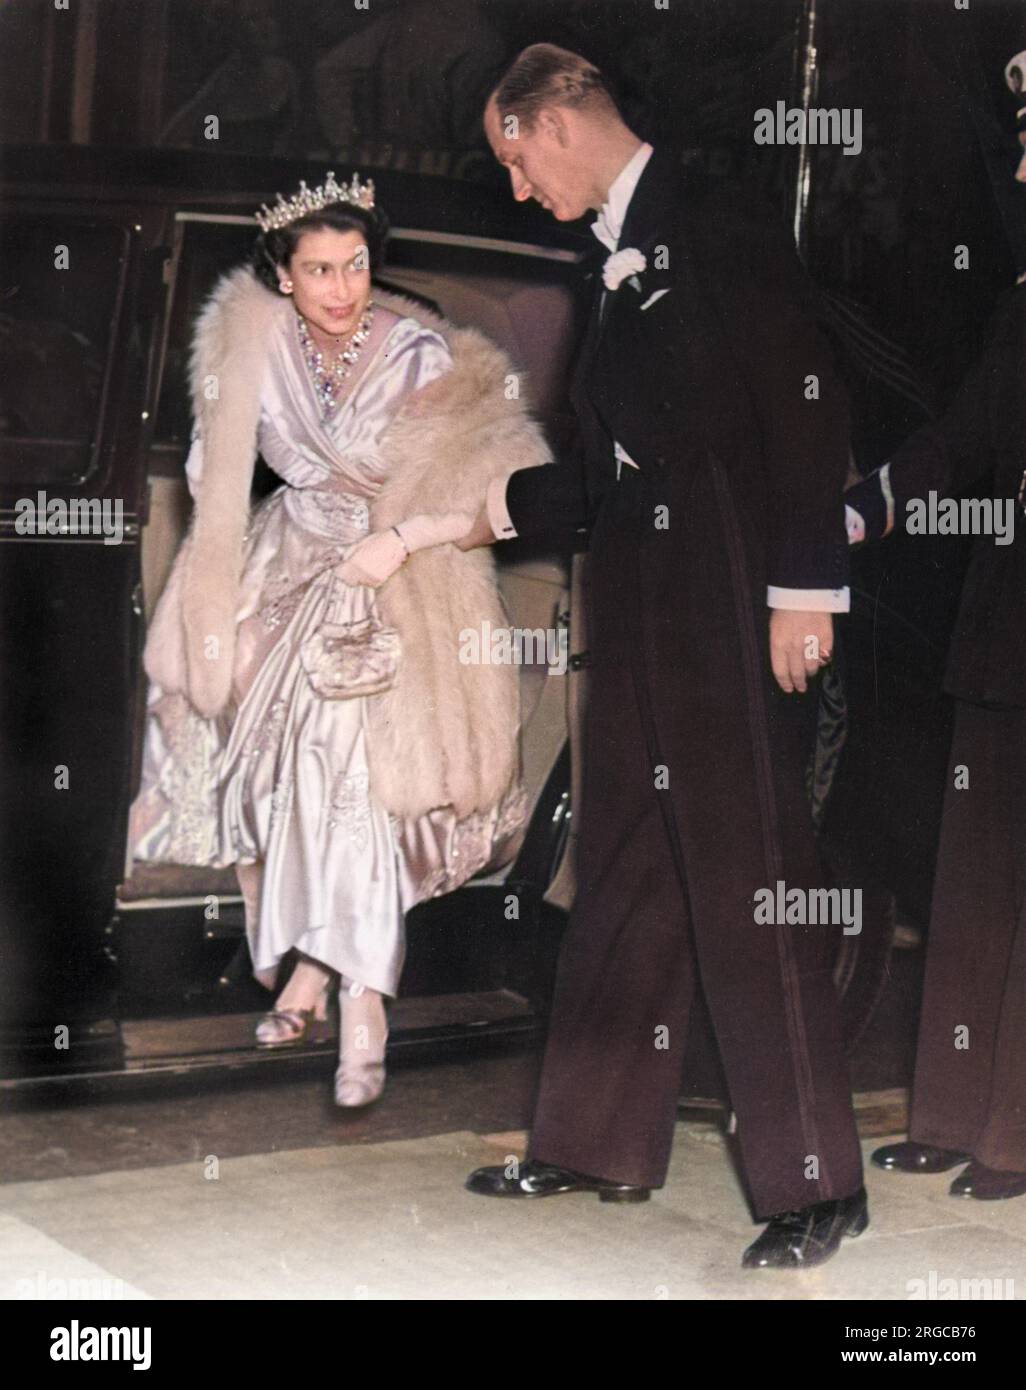 La principessa Elisabetta (Regina Elisabetta II) e suo marito, il Principe Filippo, Duca di Edimburgo, hanno partecipato alla prima del film Herbert Wilcox, "la signora con una lampada" al Warner Theatre di Londra il 22nd settembre 1951. La prima è stata in aiuto del Royal College of Nursing Educational Fund e infermieri da tutto il mondo erano presenti. Foto Stock